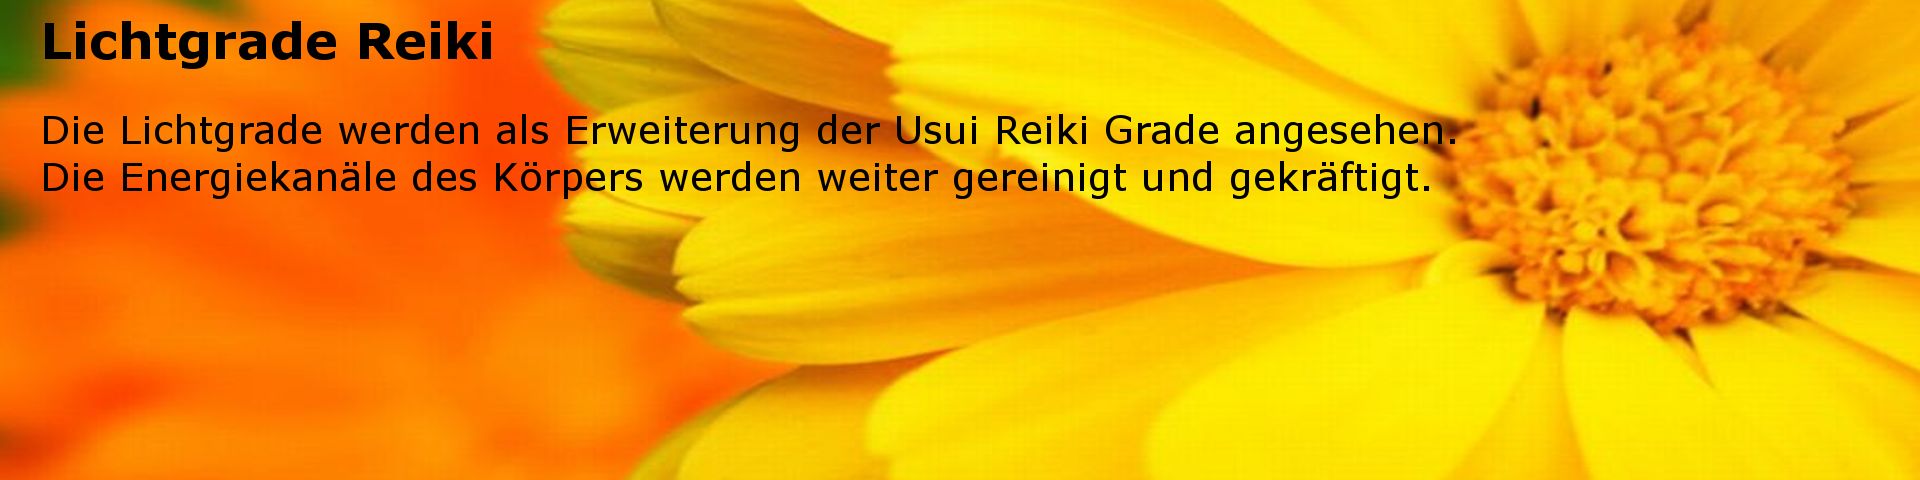 Licht Grade - Voraussetzung: Usui Reiki Meister. Weitere Stärkung der Energiekanäle.